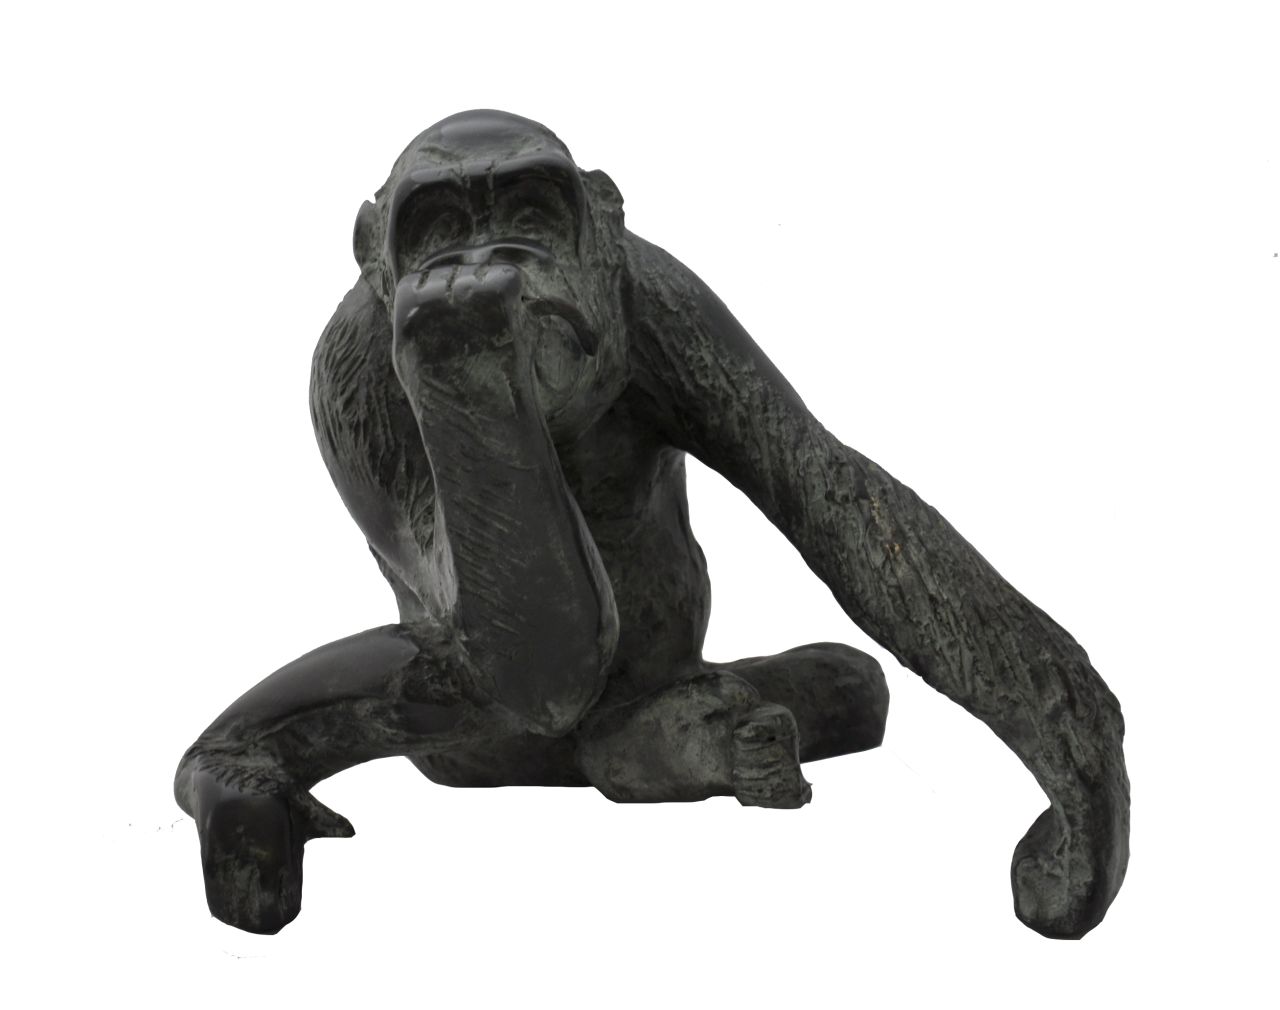 Heyster H.  | Hetty Heyster, Junger Gorilla, Bronze 14,0 x 14,5 cm, zu datieren um 1991